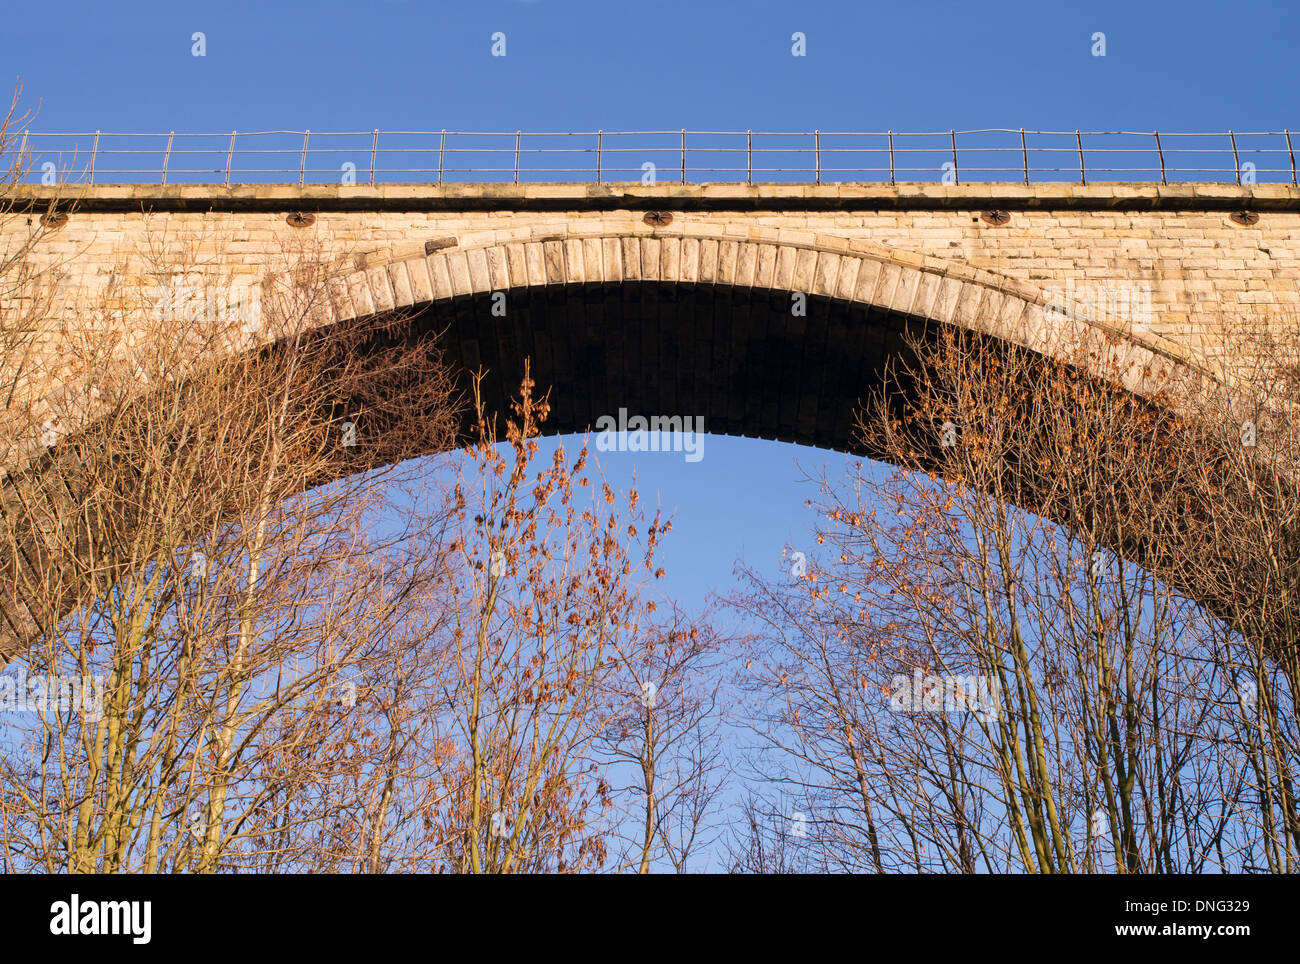 Arco del viadotto di Victoria Vittoriano ponte ferroviario sul fiume usura in Washington, North East England, Regno Unito Foto Stock